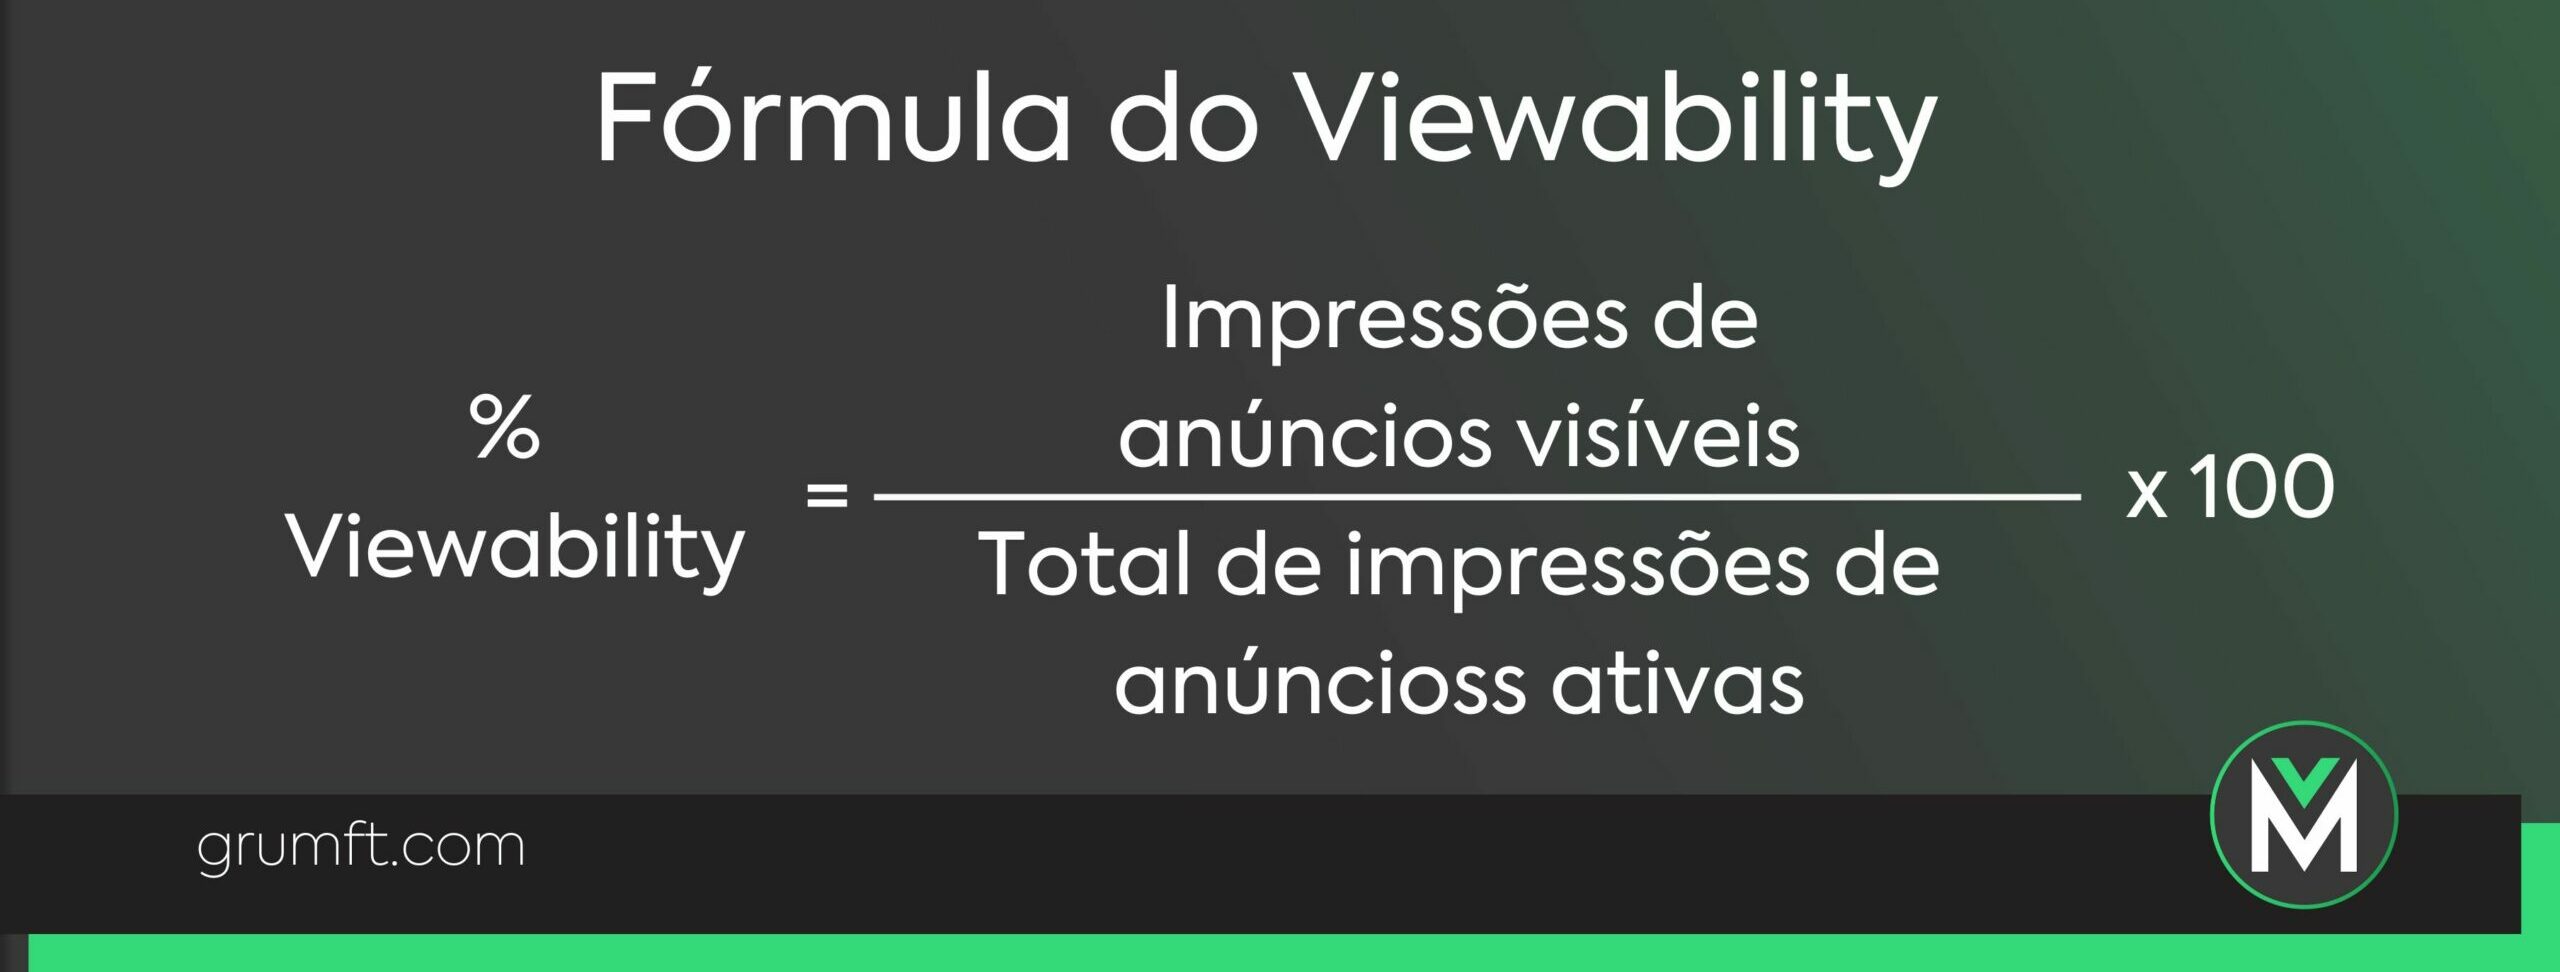 Fórmula do Viewability 